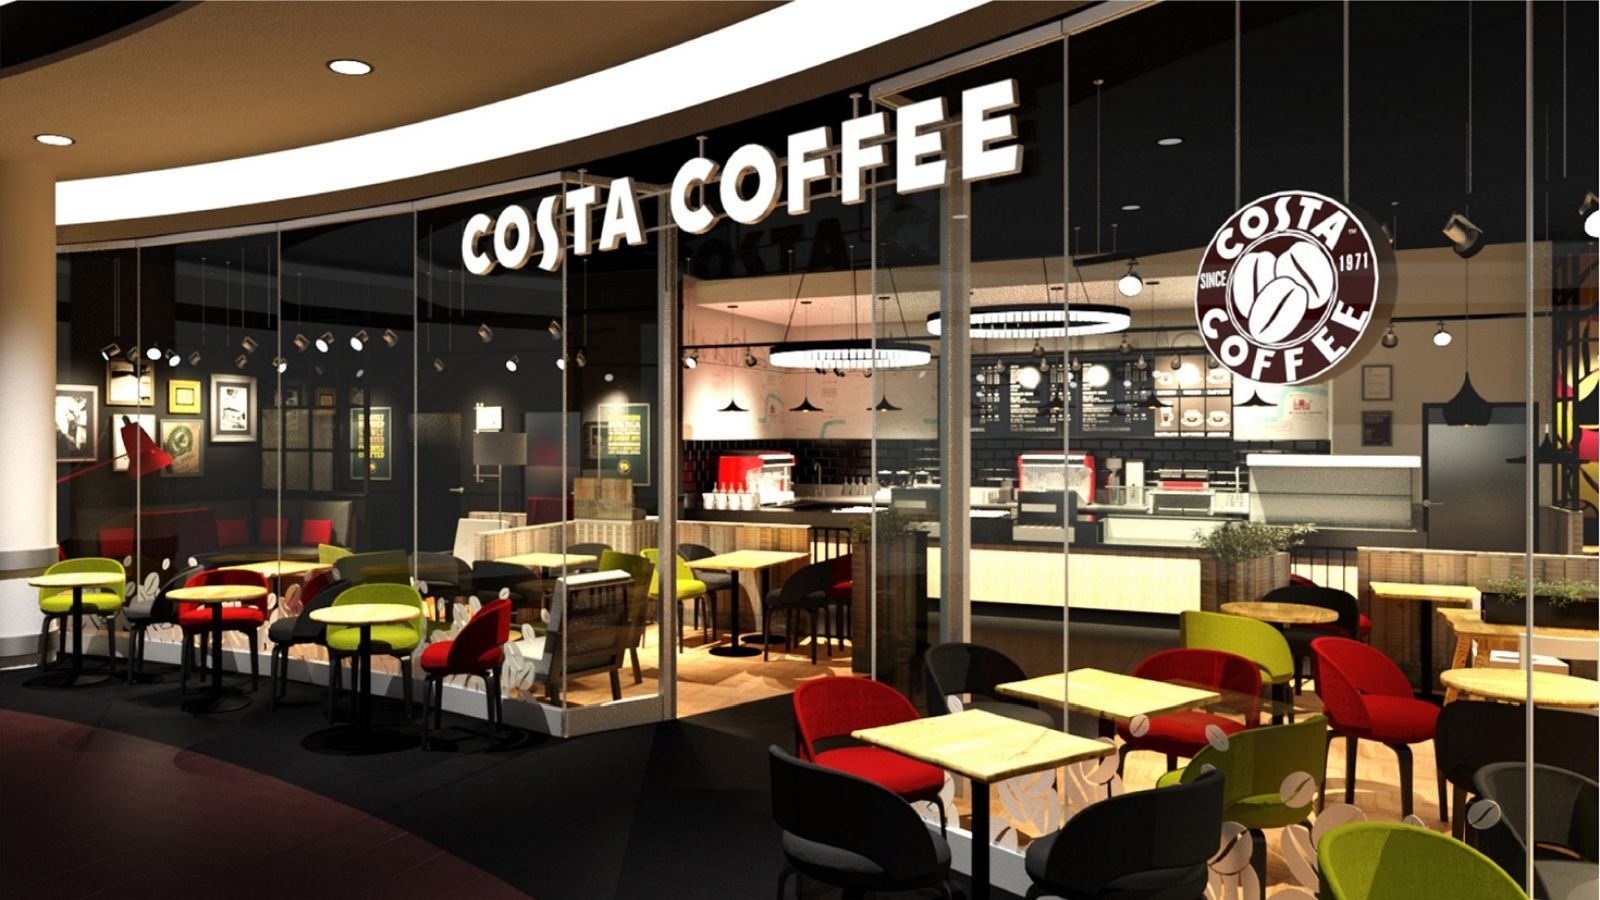 Costa Coffee rozstrzygnęła przetarg Przetargi mediarun costa coffe